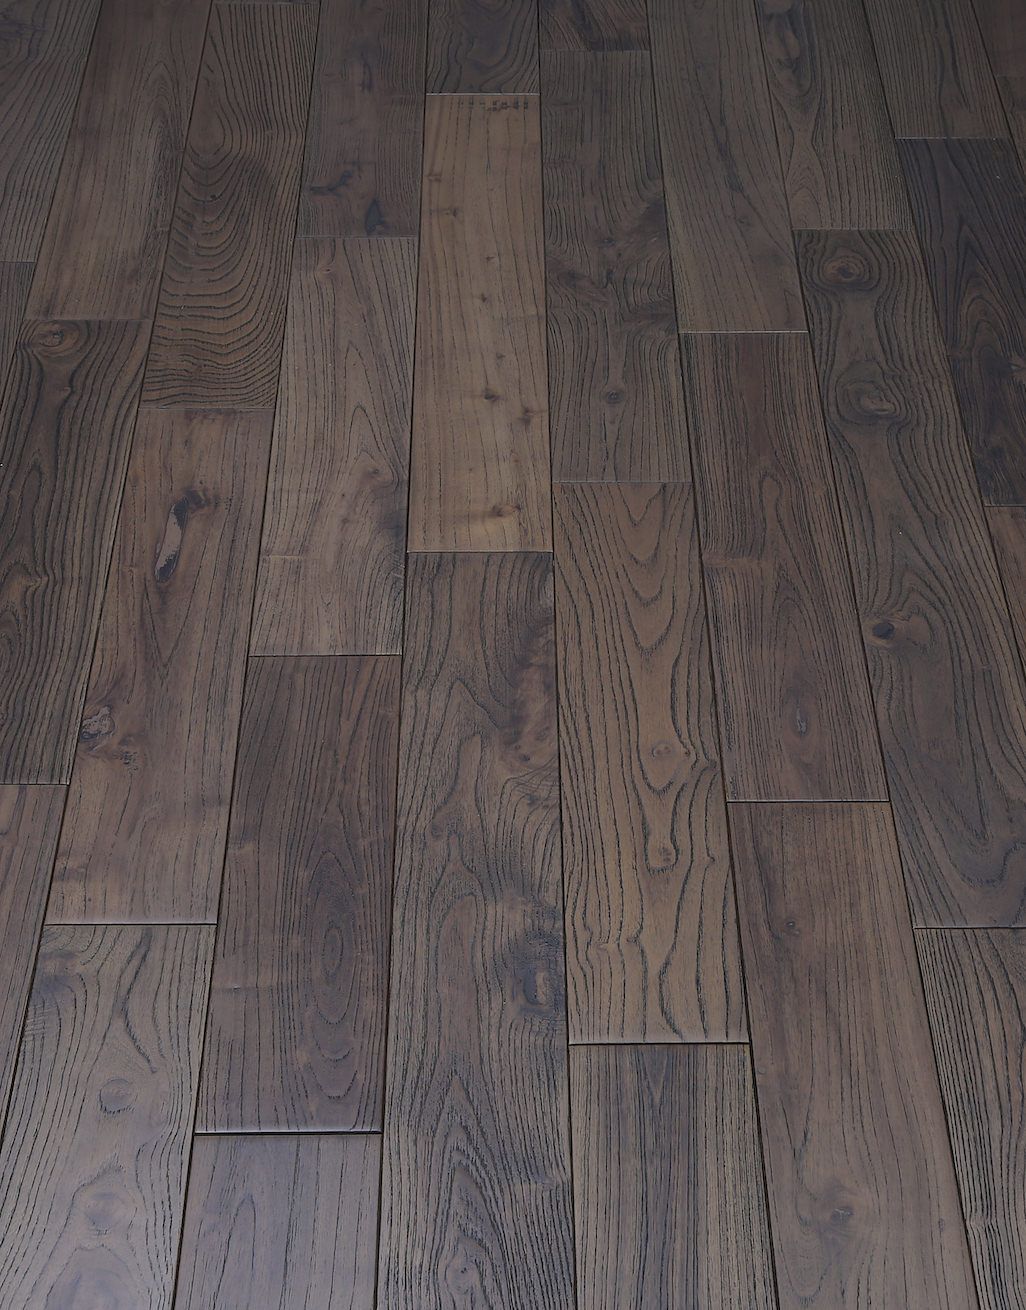 Aged Teak Lacquered Solid Wood Flooring, Aged Hardwood Flooring